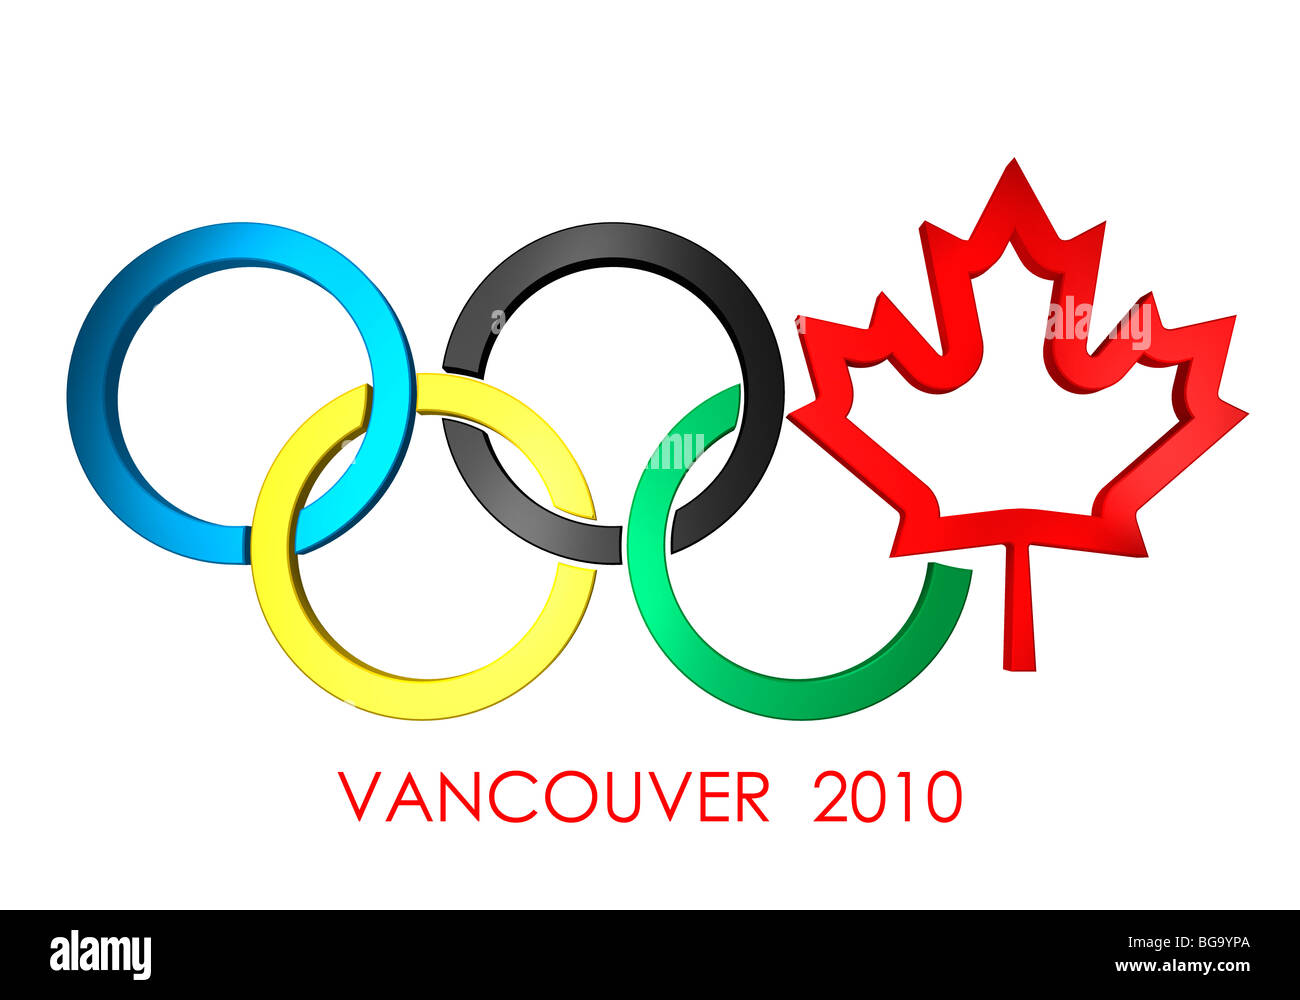 Olympische Ringe Vancouver 2010 Konzept mit einem Kanada Maple Leaf-Symbol. Isoliert auf weißem Hintergrund. Stockfoto